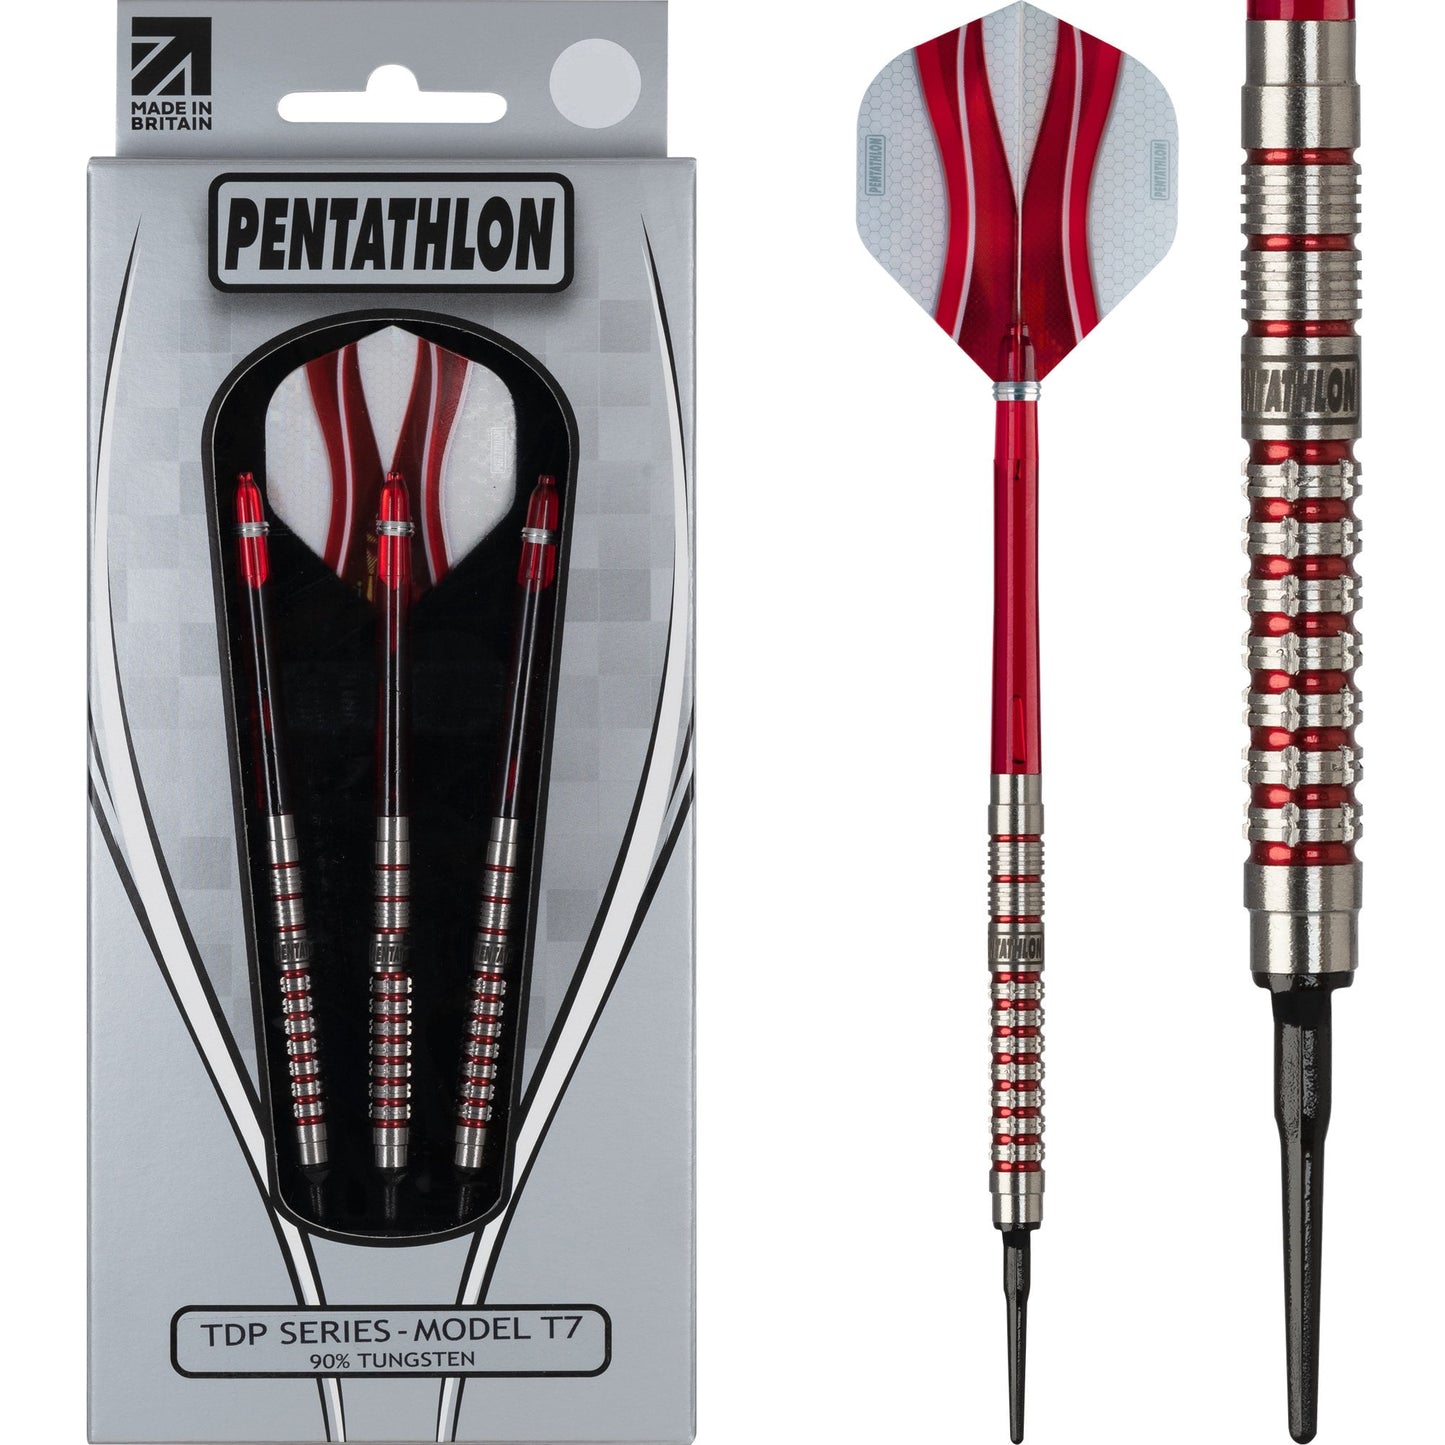 Pentathlon Darts - Soft Tip Tungsten - TDP Series - T7 20g